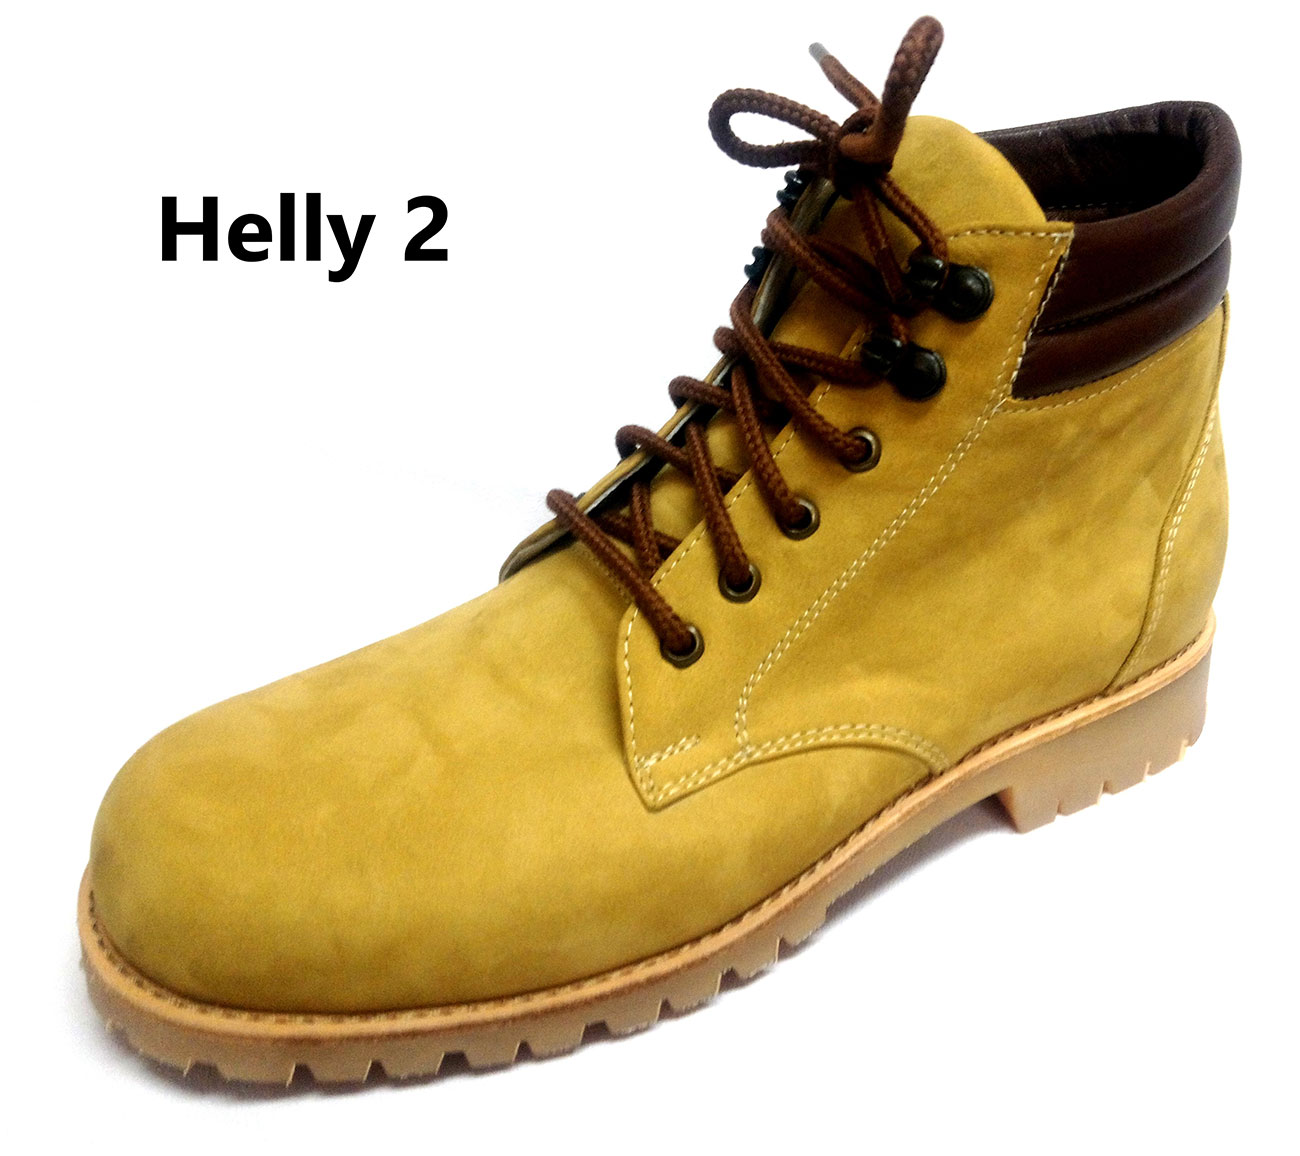 Helly-2_r.jpg